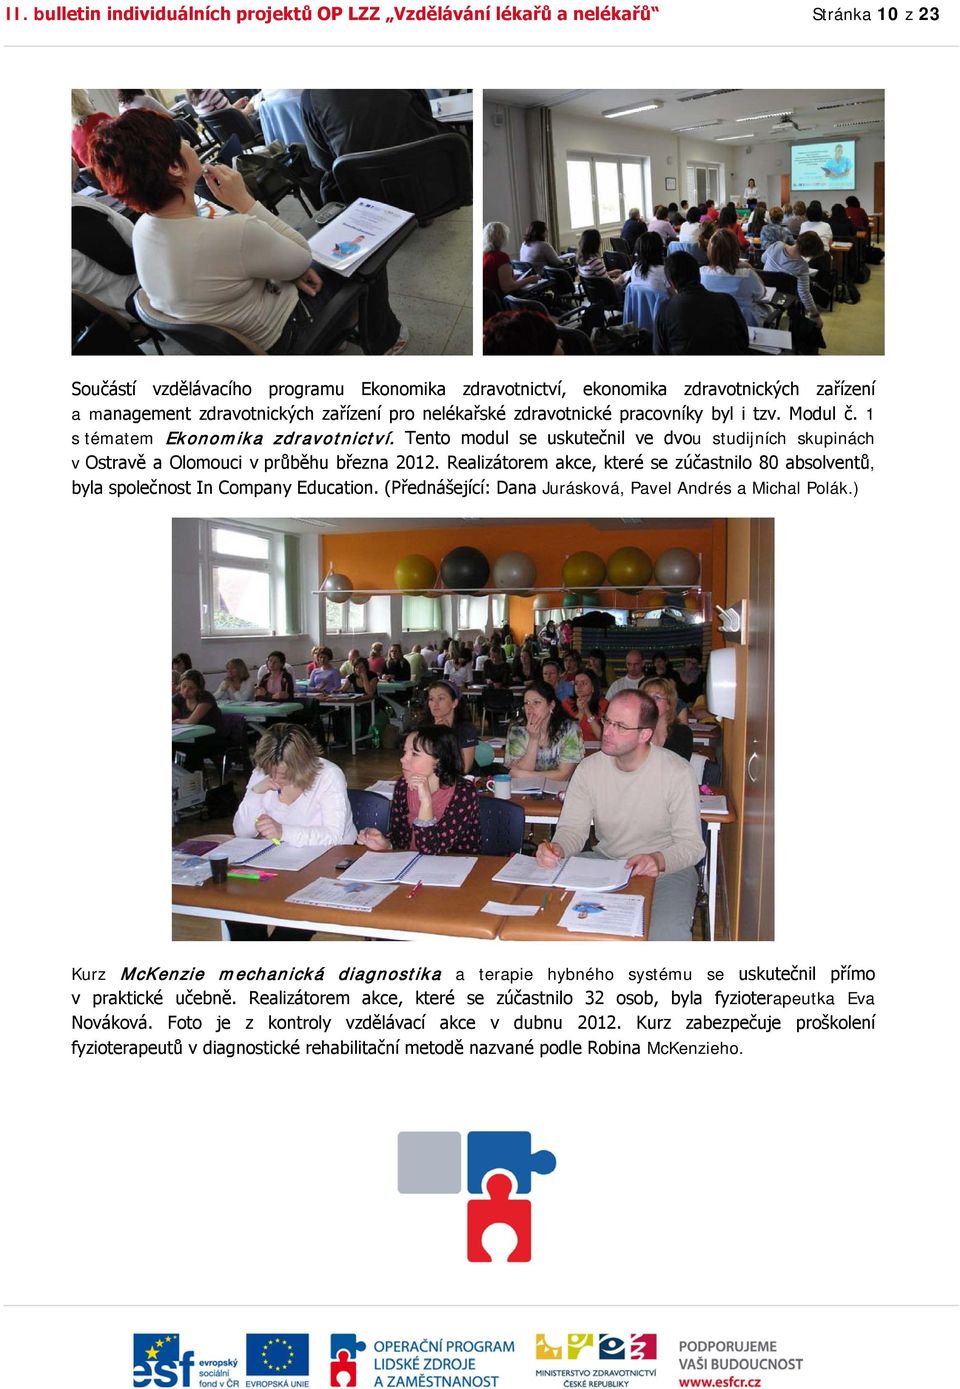 Tento modul se uskutečnil ve dvou studijních skupinách v Ostravě a Olomouci v průběhu března 2012. Realizátorem akce, které se zúčastnilo 80 absolventů, byla společnost In Company Education.